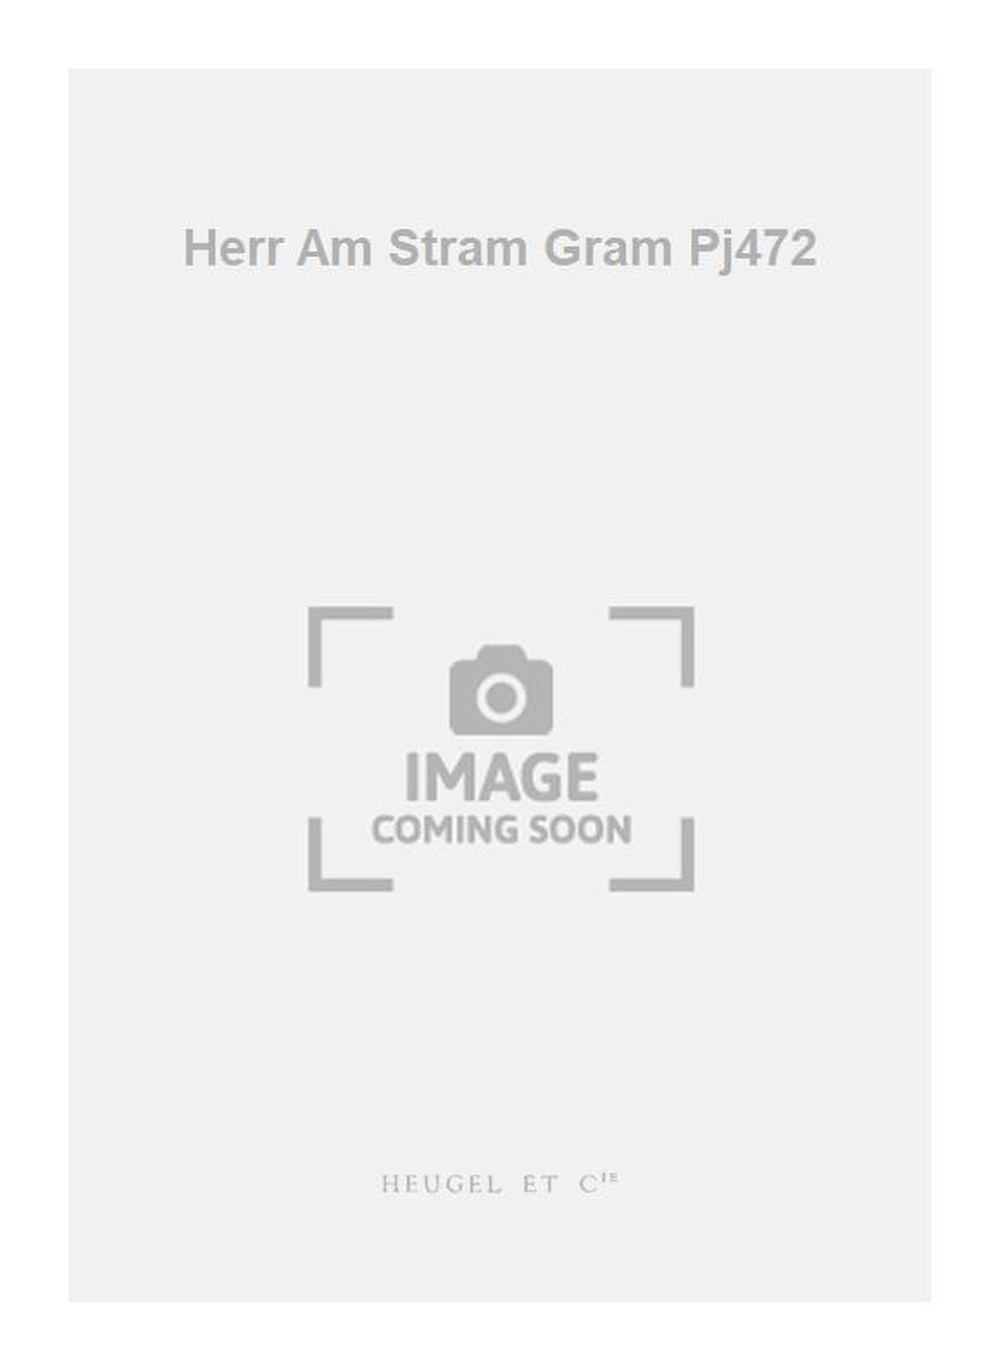 Herr Am Stram Gram Pj472